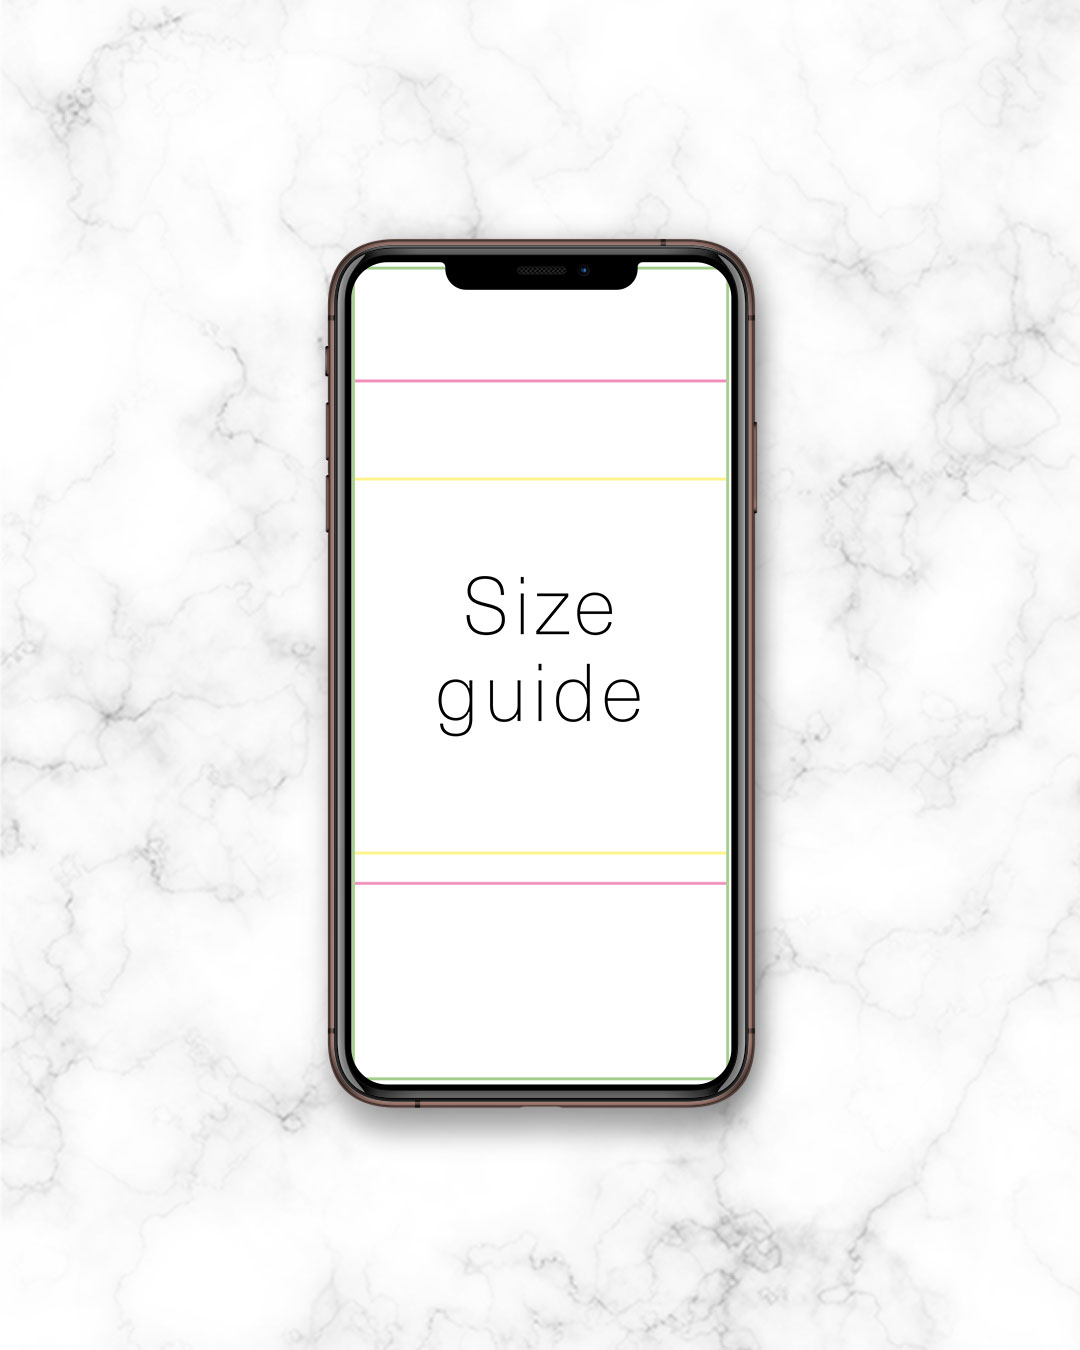 ohHello Design | Resources - Size guide